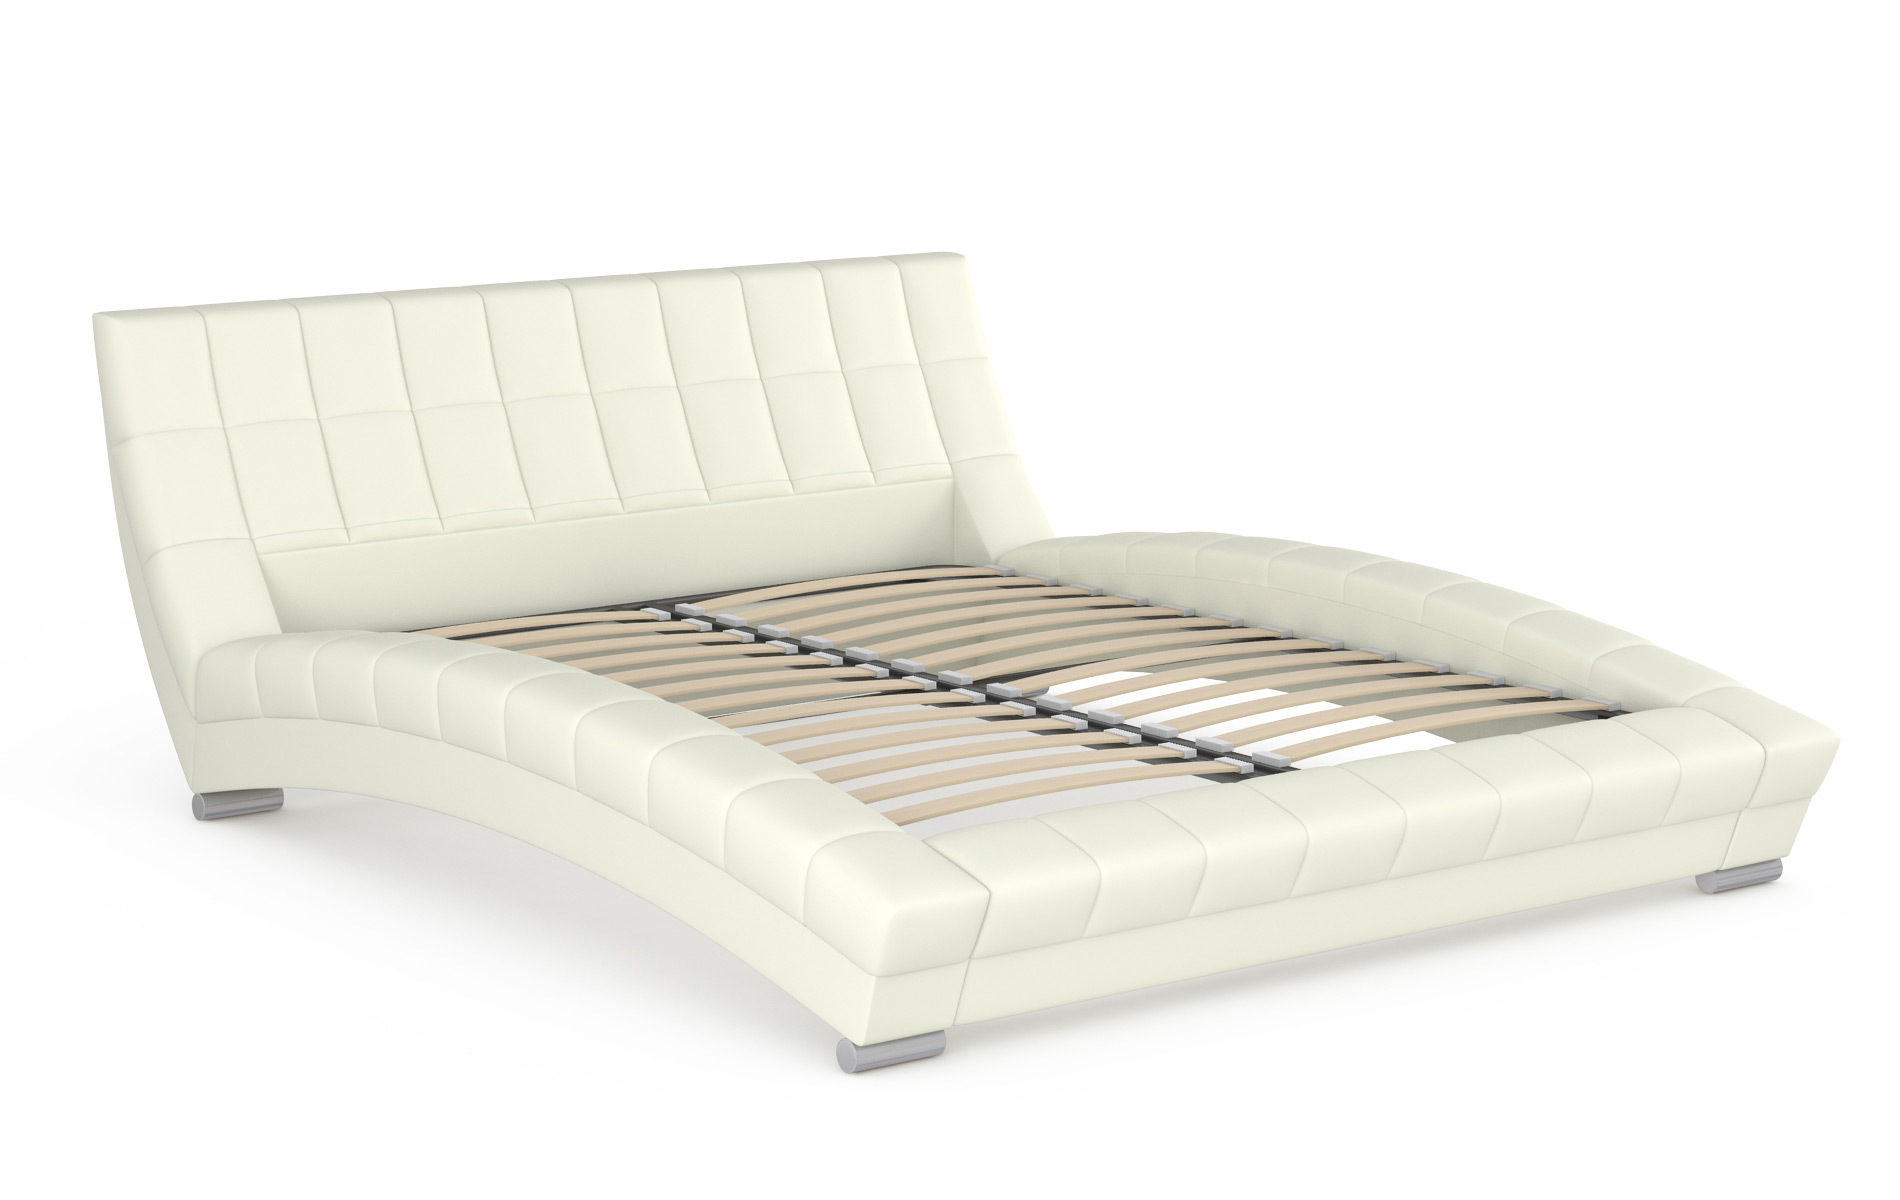 Кровать интерьерная Mobi Оливия 200х250х88 см, белый